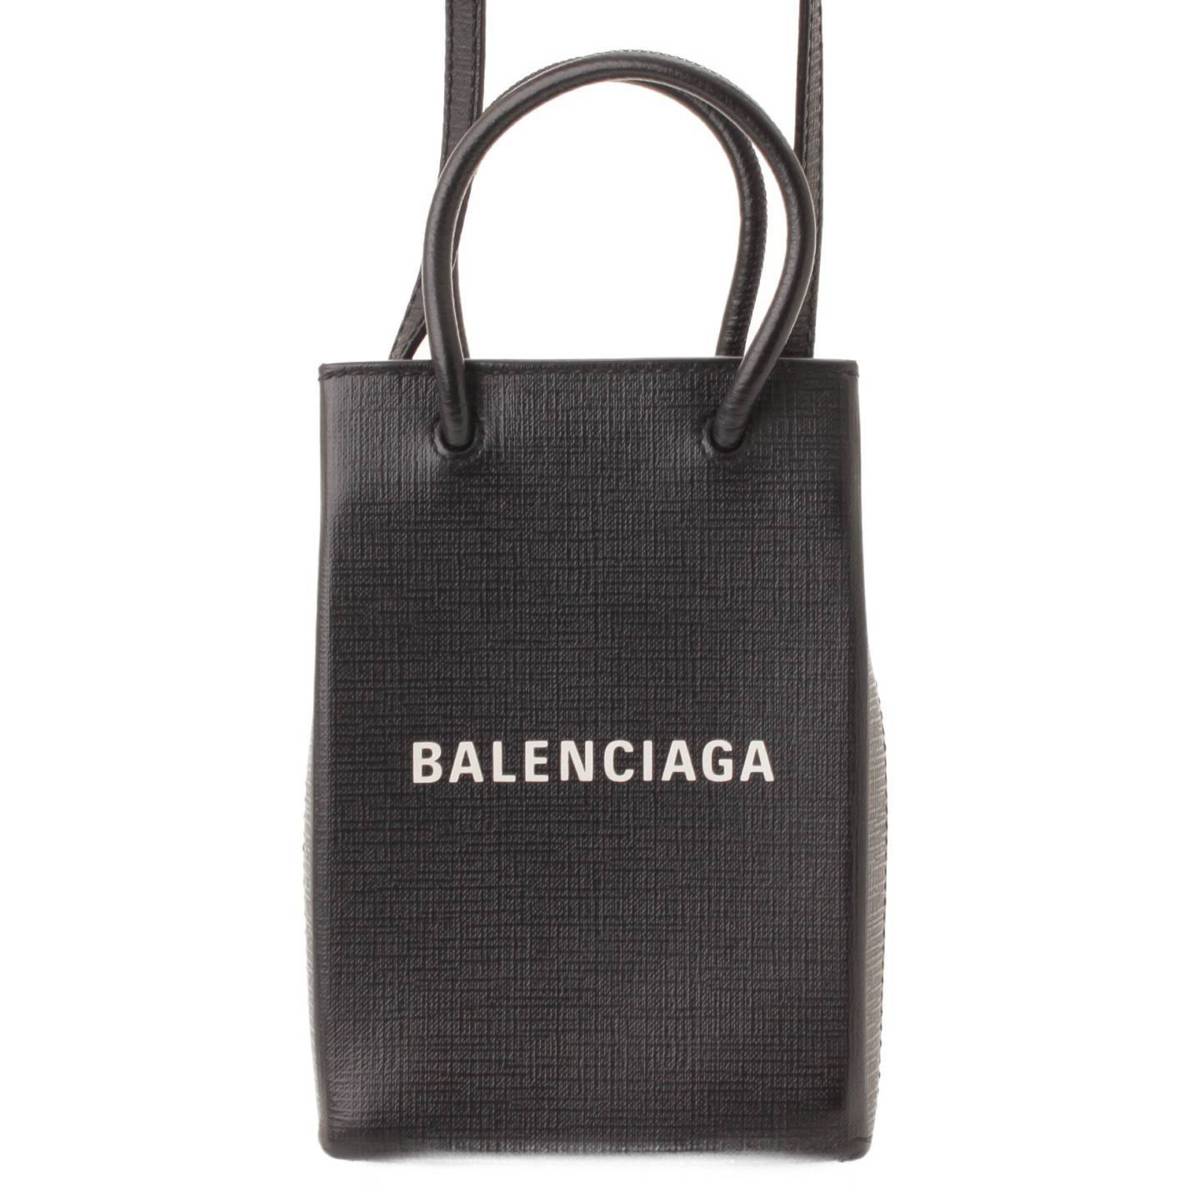 バレンシアガ(Balenciaga) ショッピングフォンホルダー レザー 2WAY ショルダーバッグ 593826 ブラック